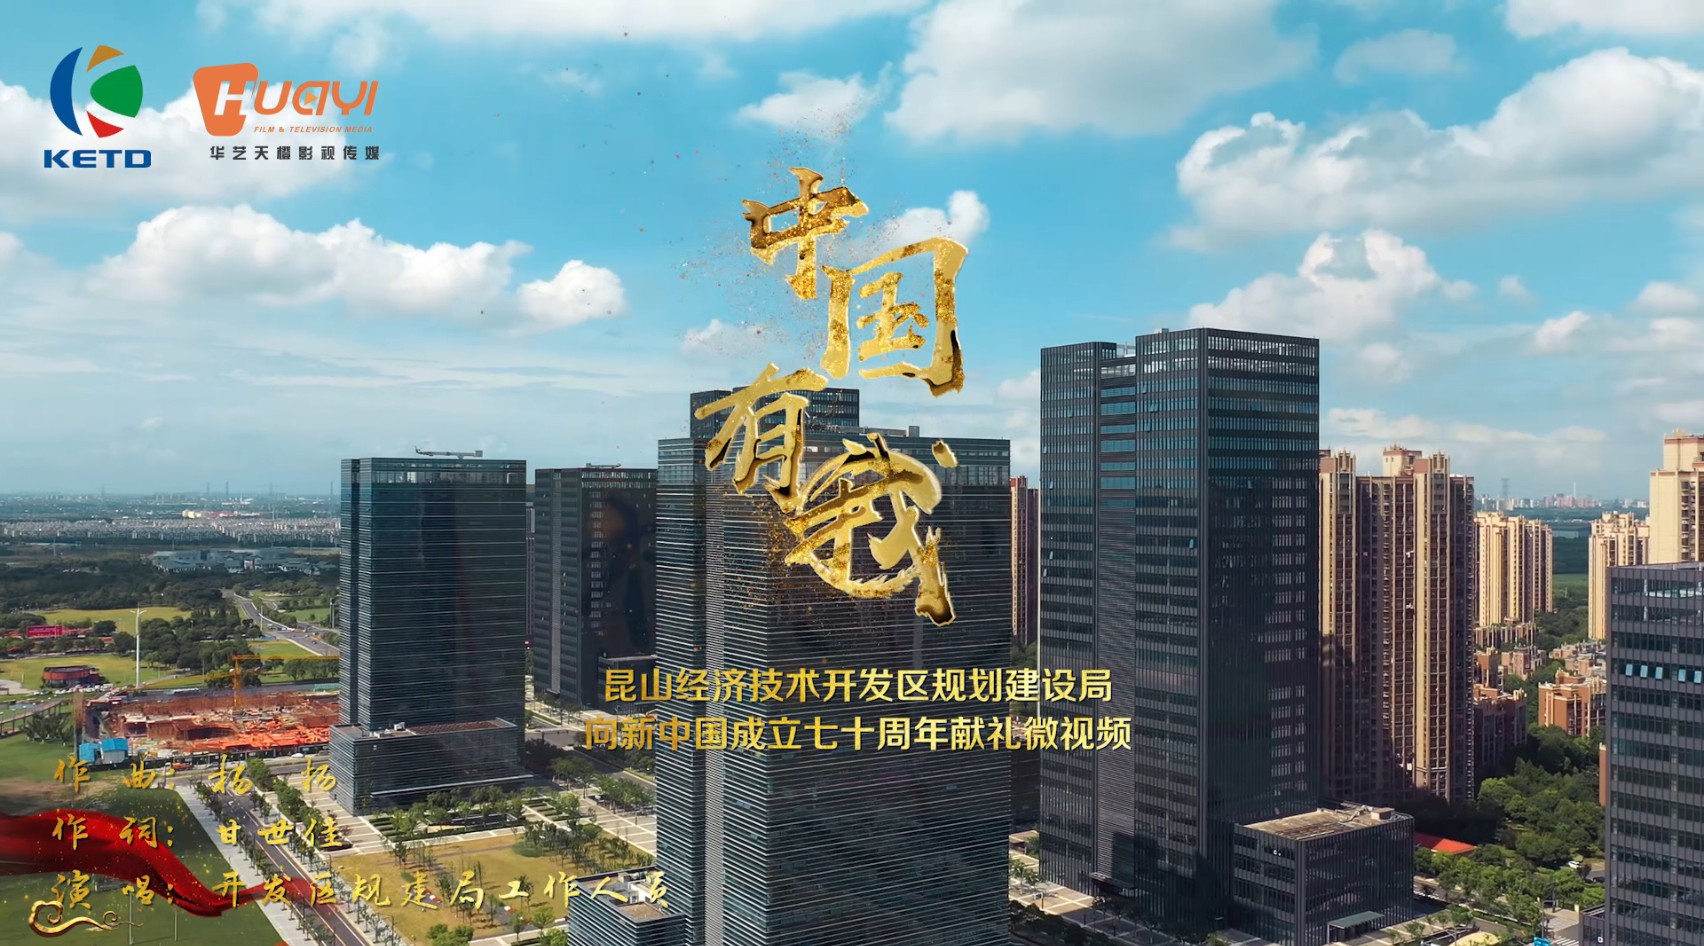 昆山开发区规划建设局向新中国成立七十周年献礼微视频 